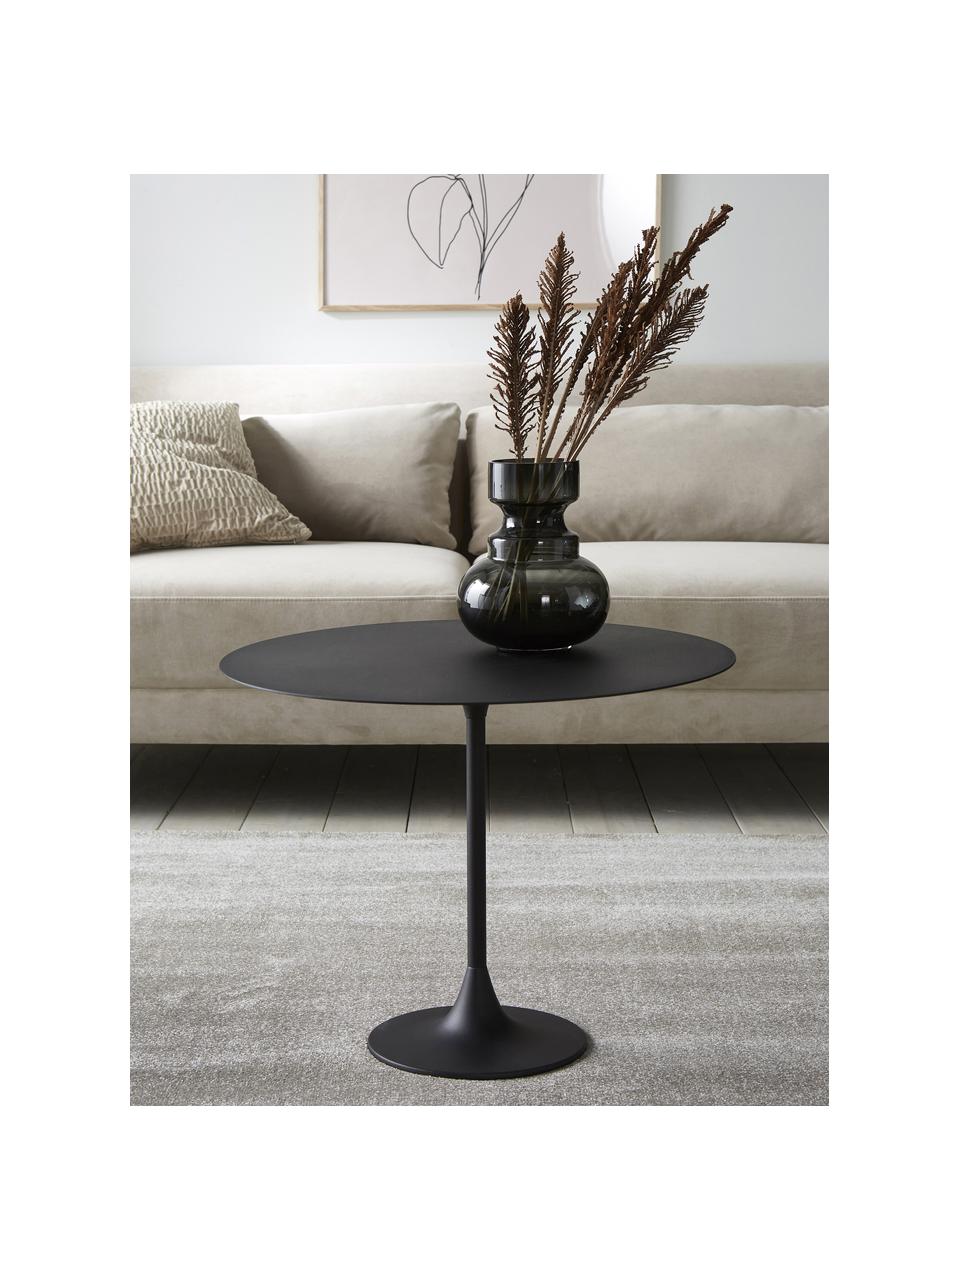 Kulatý kovový konferenční stolek Thin, Potažený kov, Černá, Ø 60 cm, V 47 cm